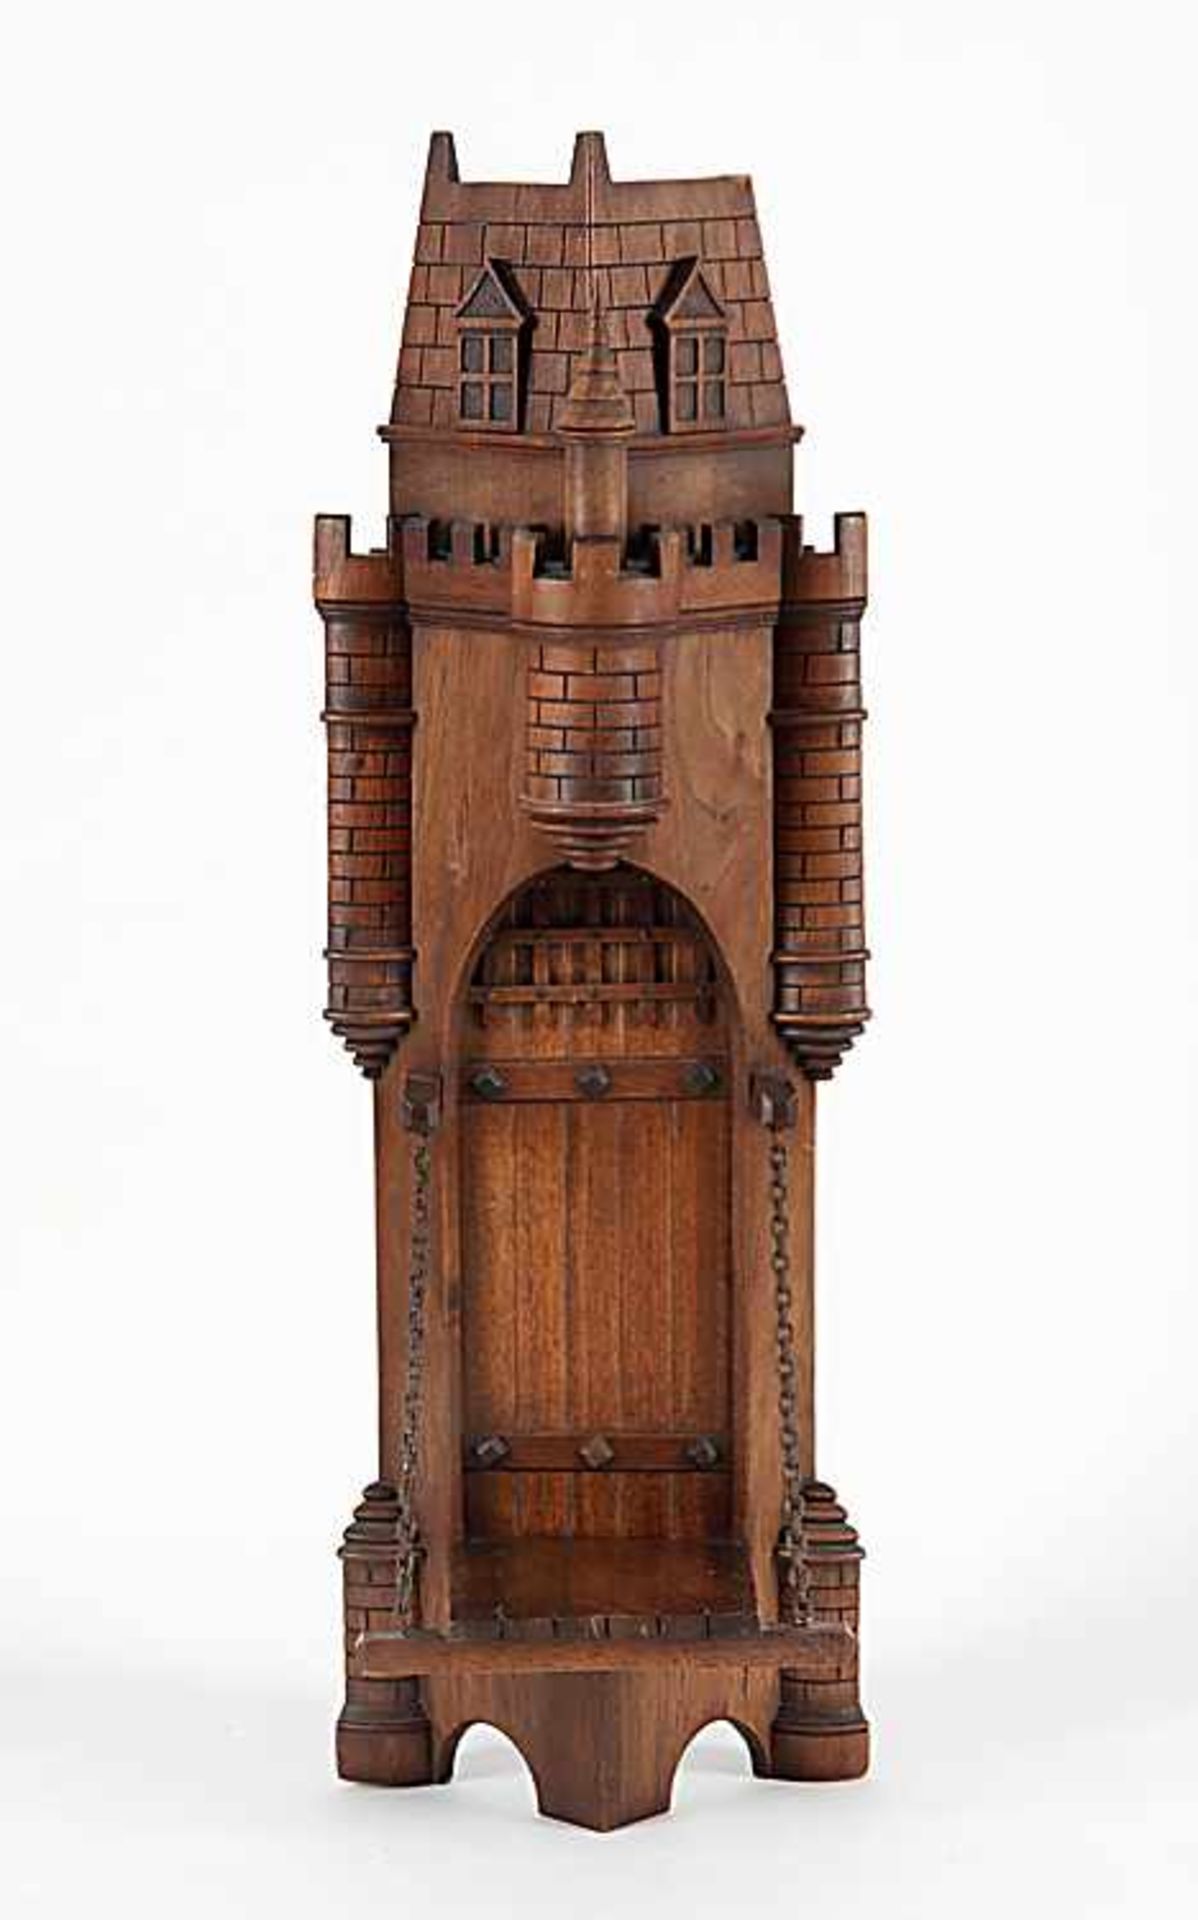 KonsoleIn Form eines Burgtores mit Turmzinnen und Zugbrücke. Wohl Ende 19. Jh., um 1900. Nussbaum